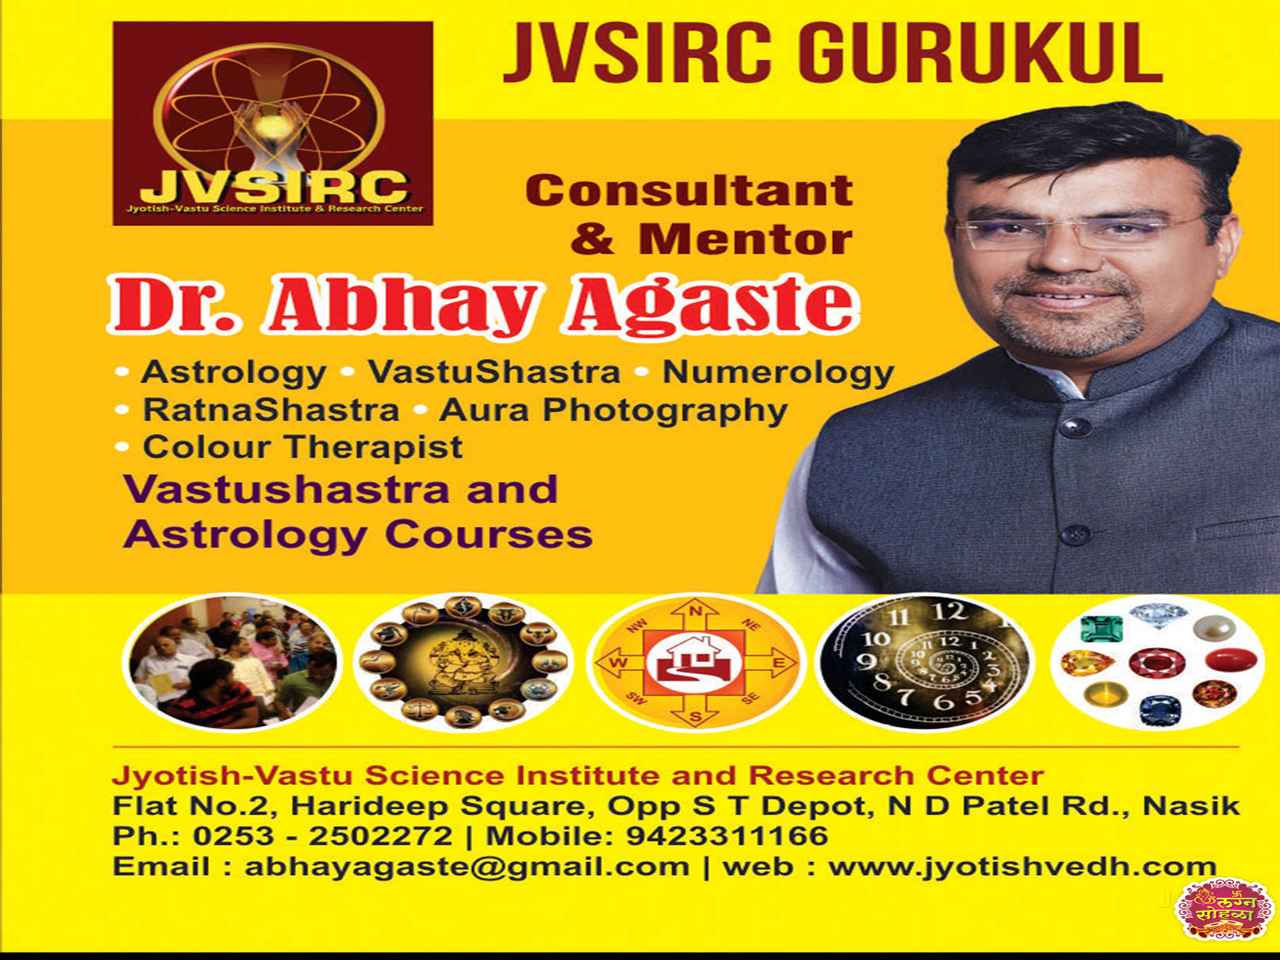 Jyotish Vastu Science Institute & Research Center